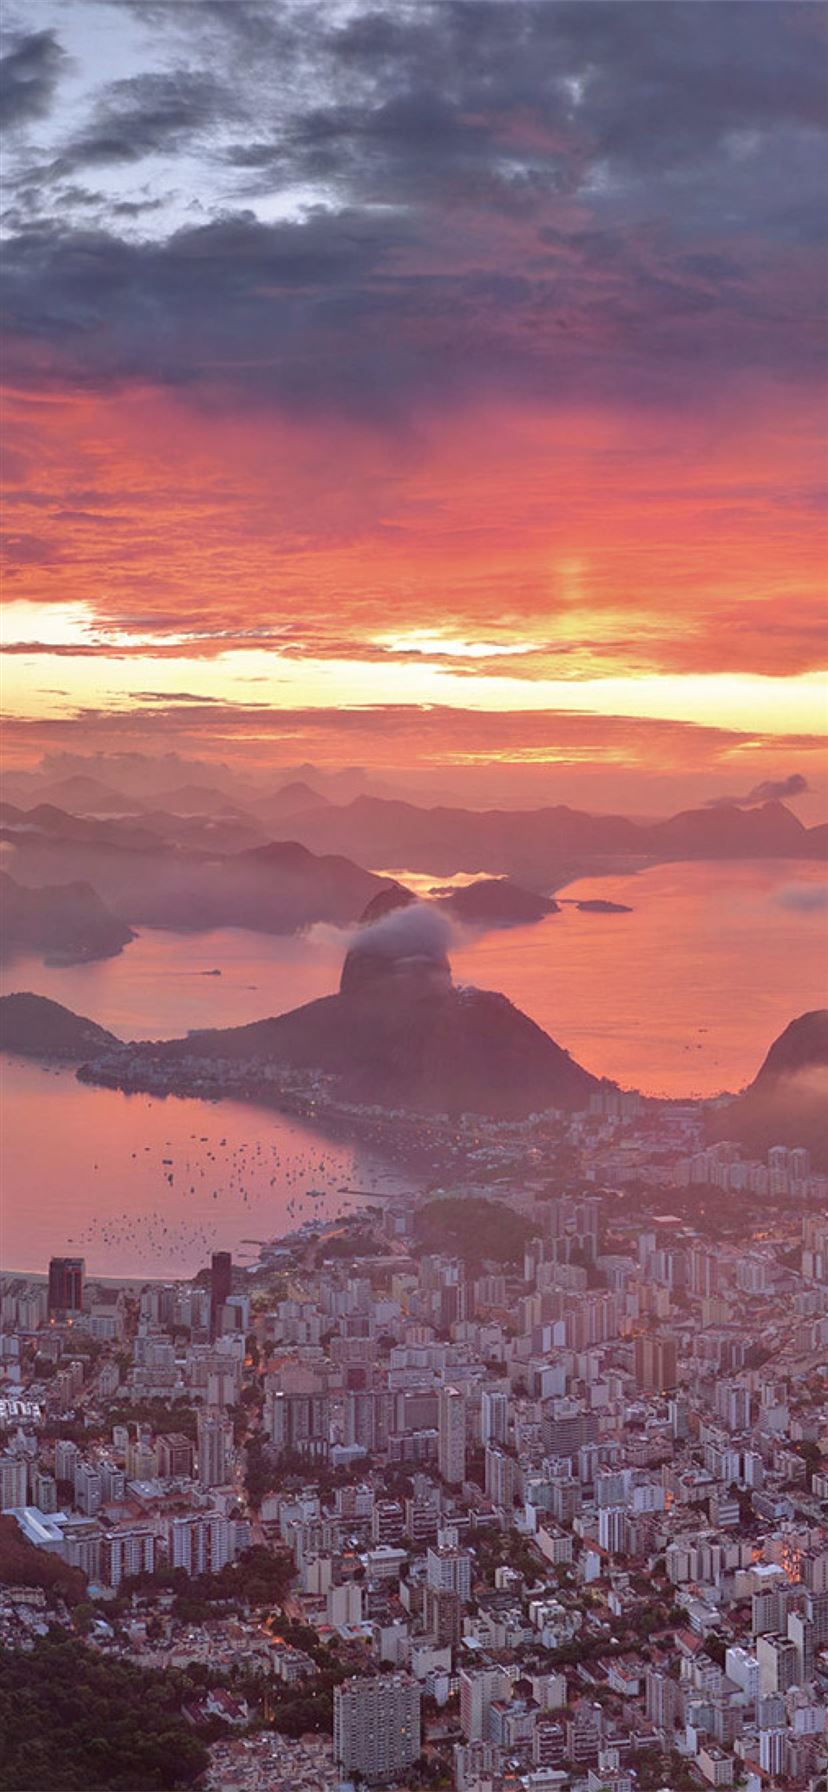 600 Free Rio De Janeiro  Brazil Images  Pixabay